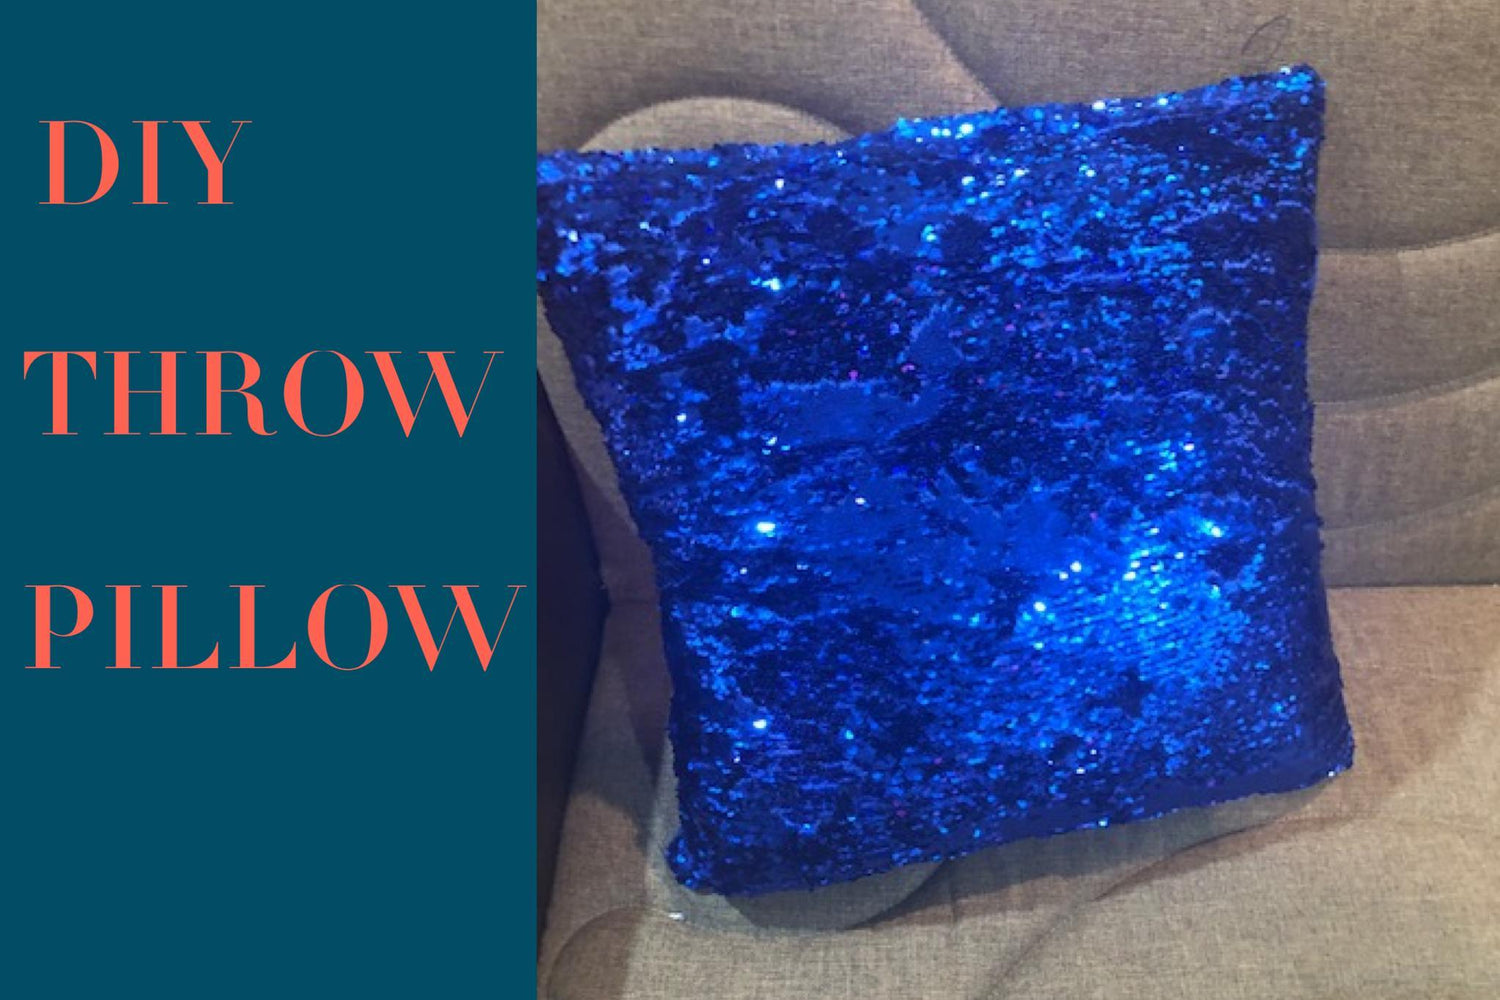 DIY Throw Pillow